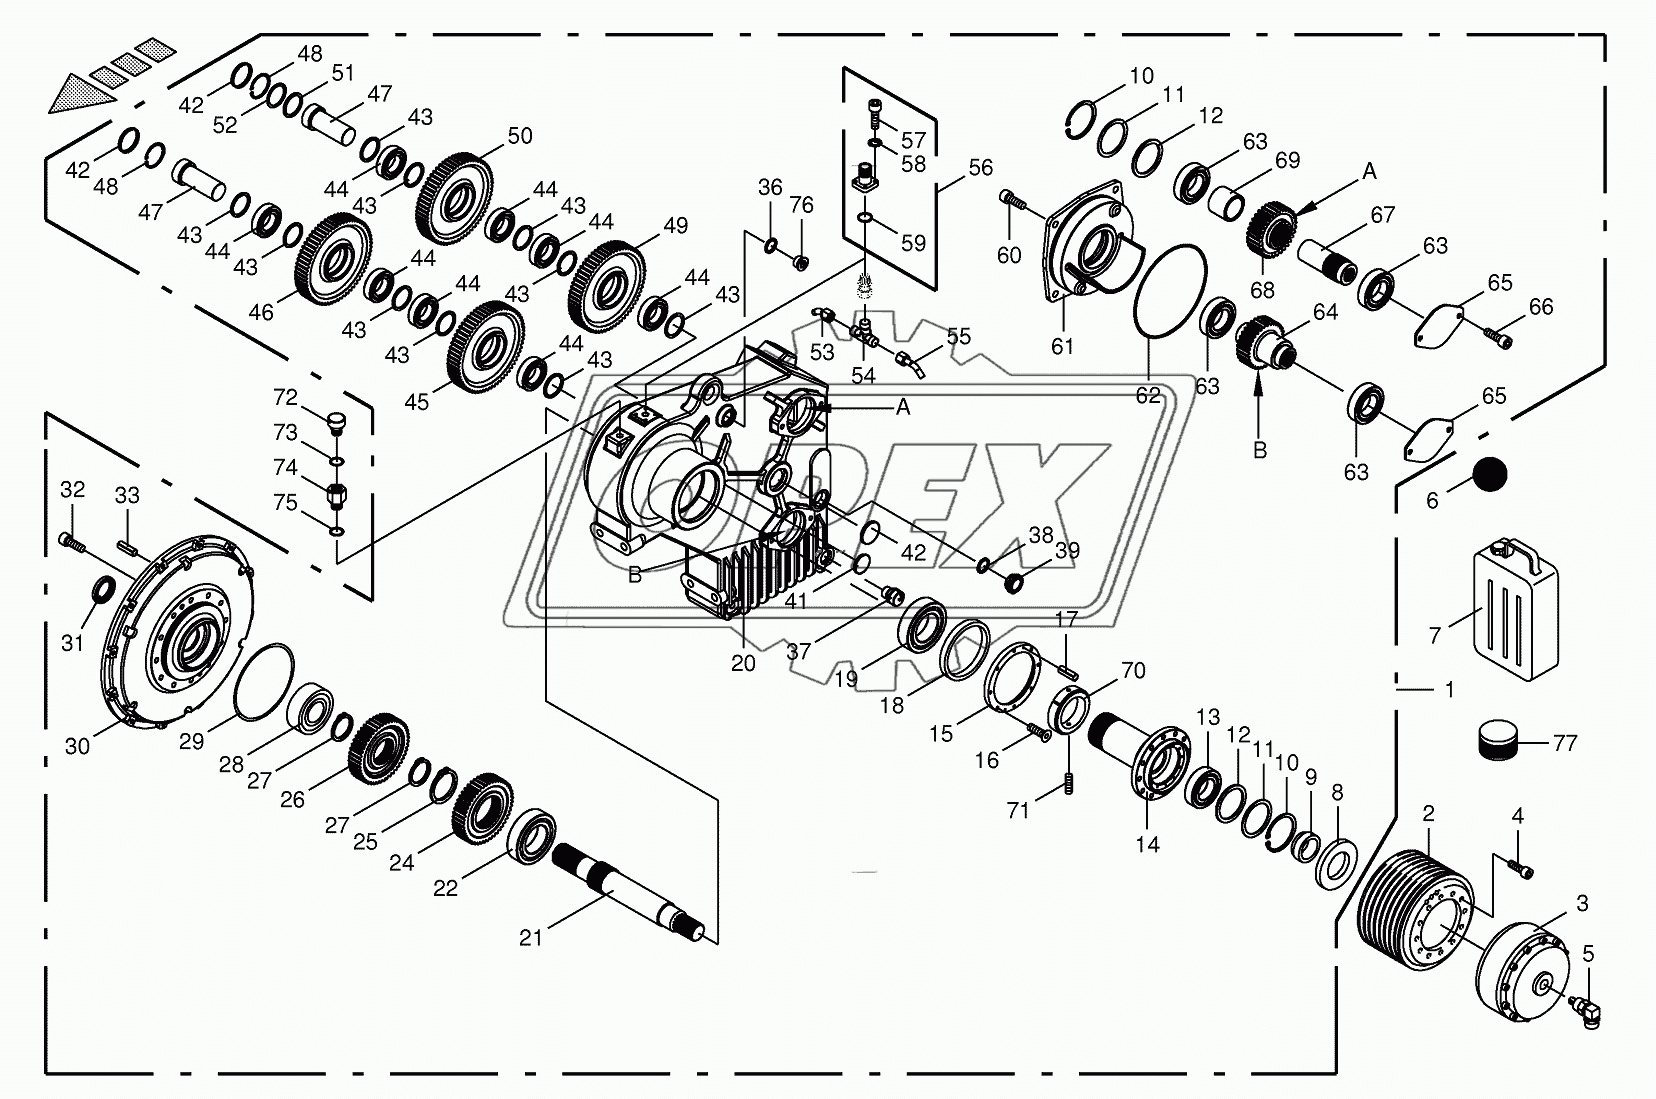 Motor output gear 1